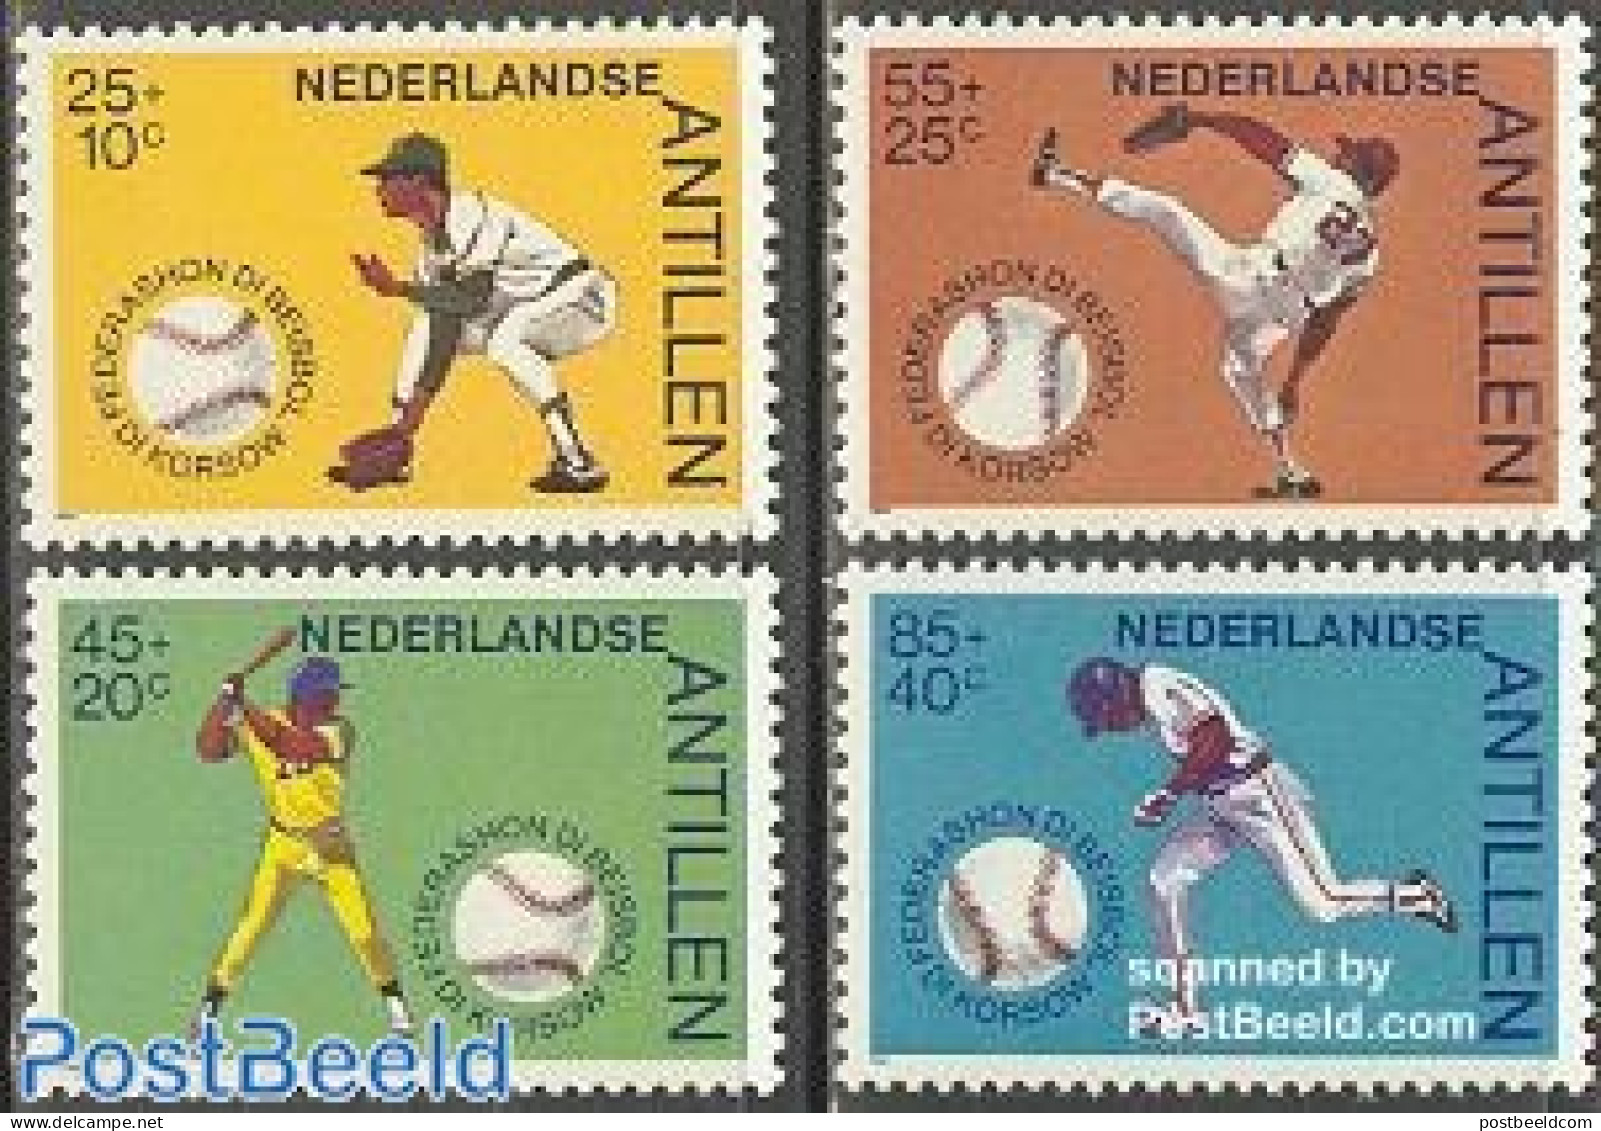 Netherlands Antilles 1984 Baseball 4v, Mint NH, Sport - Baseball - Baseball